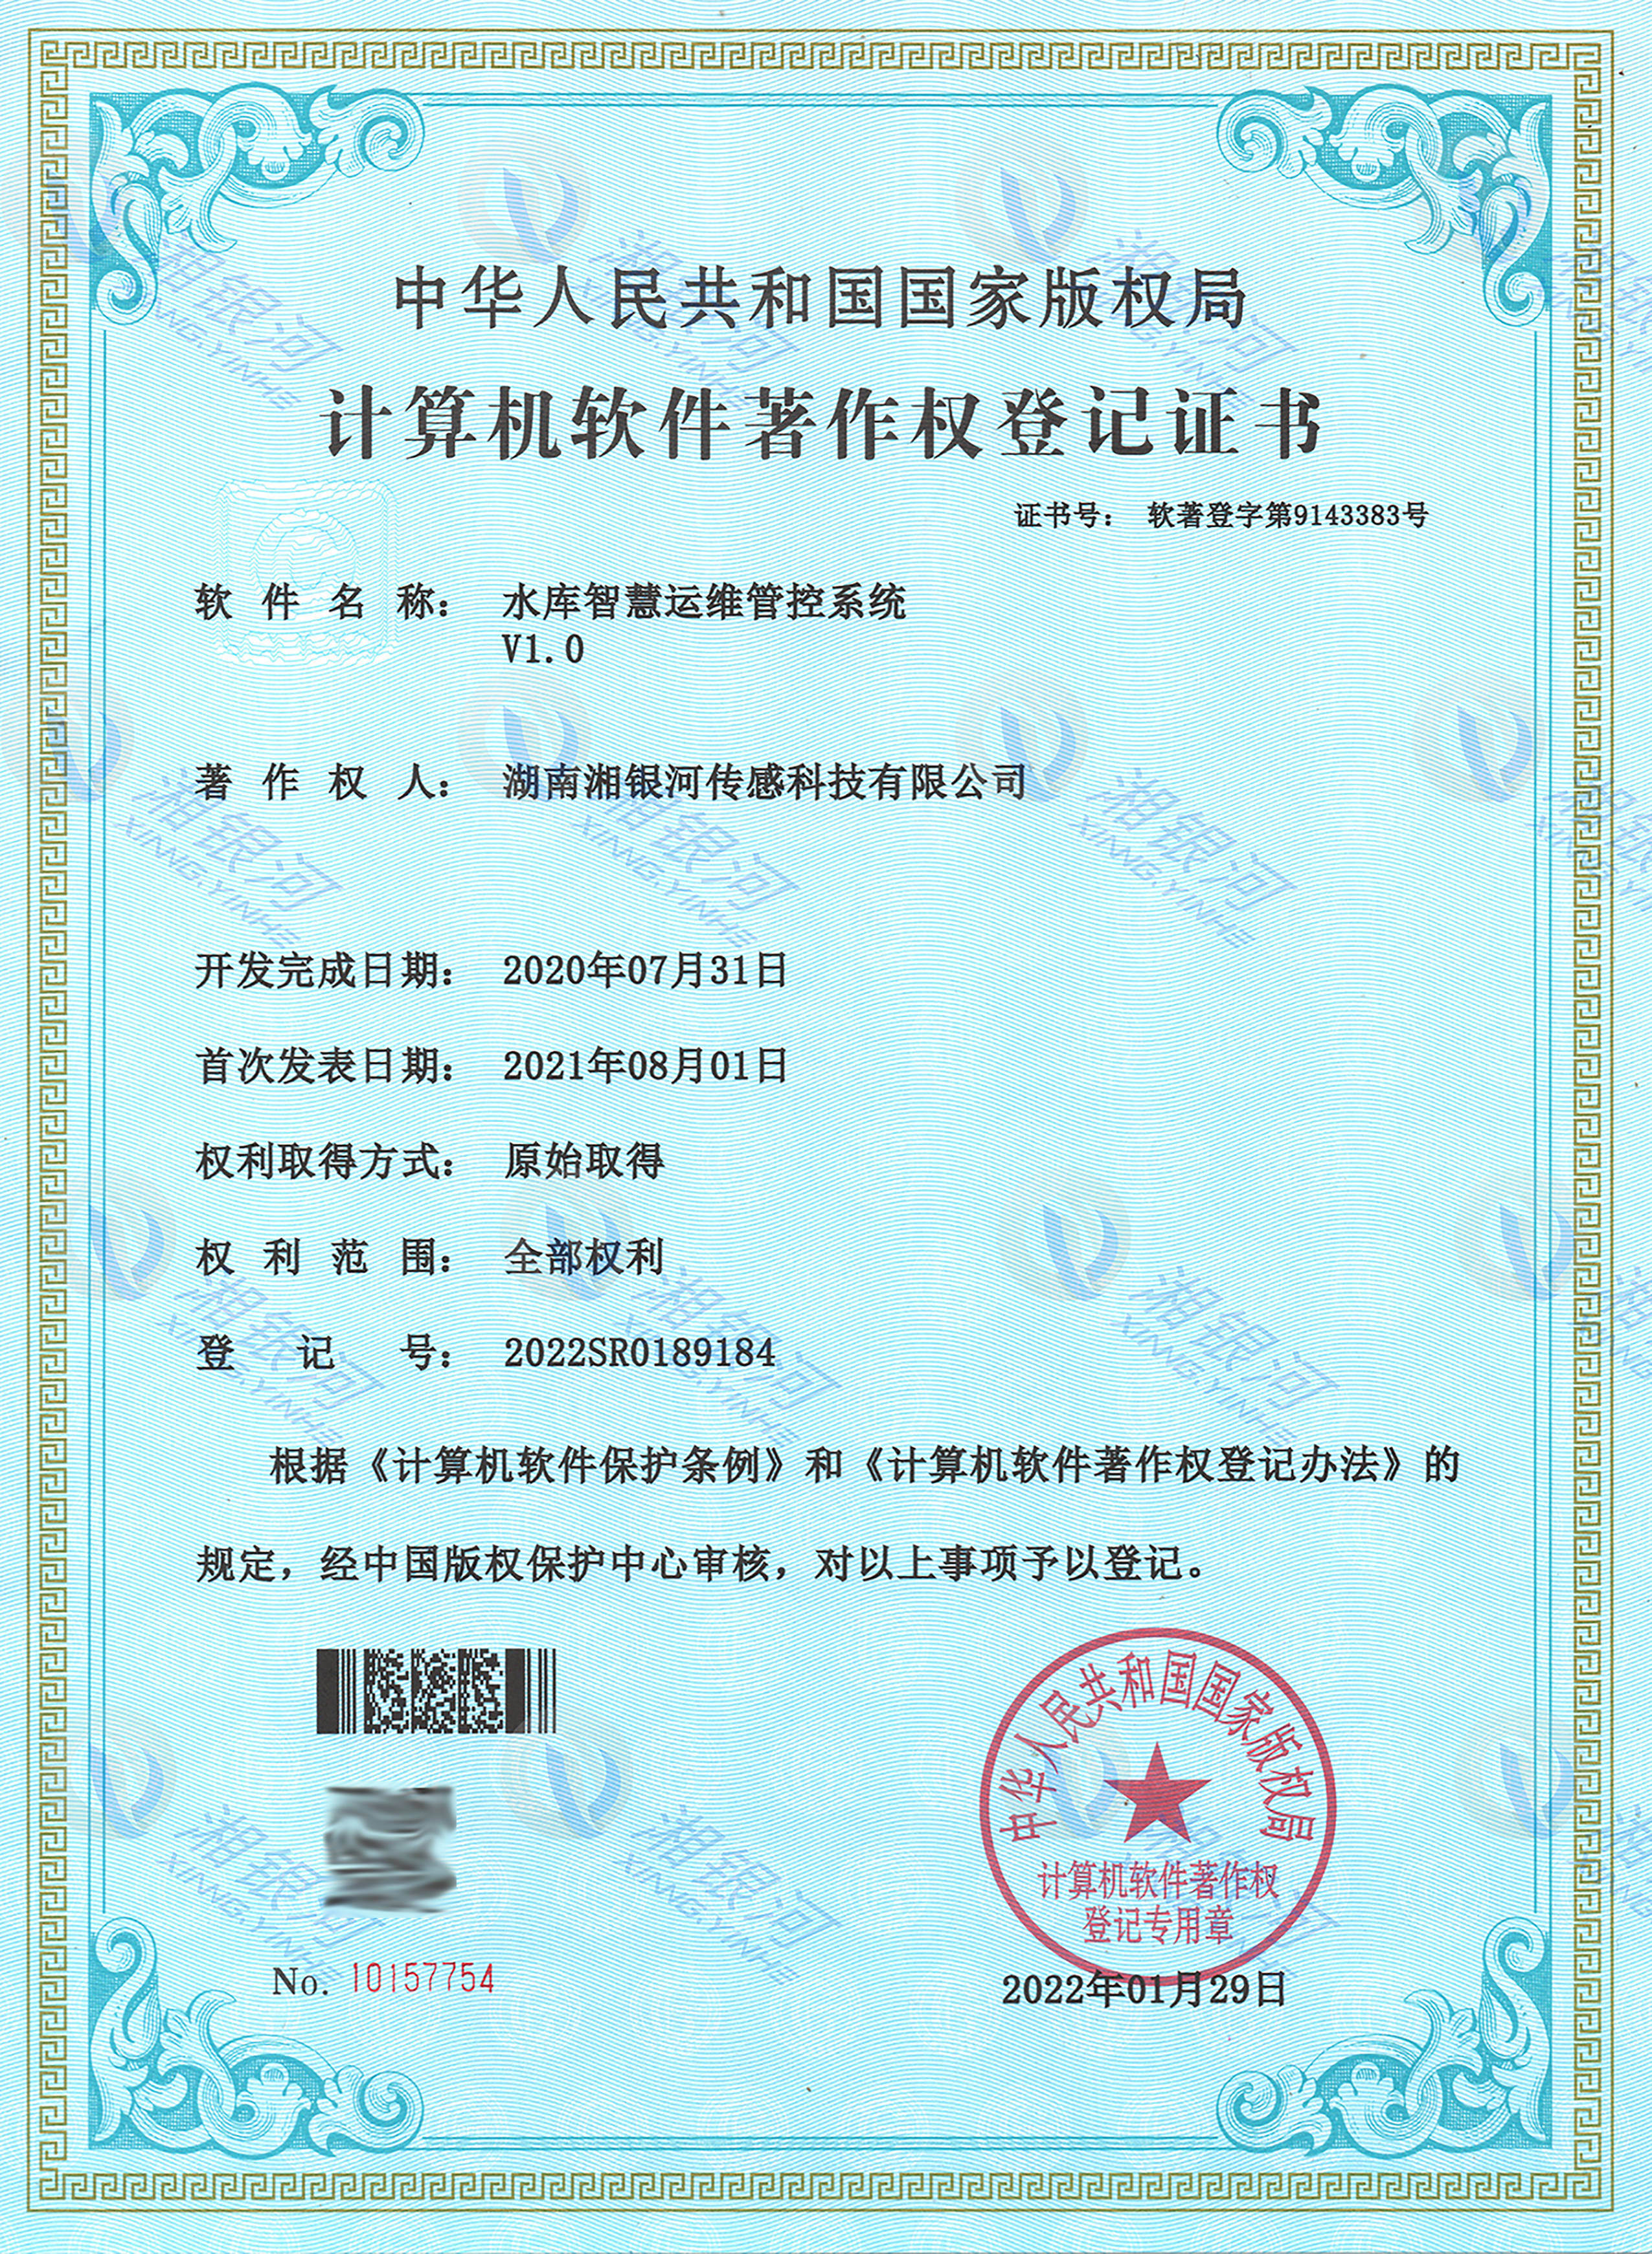 证书目前,湖南湘银河传感科技有限公司已获得20多项专利及软件著作权